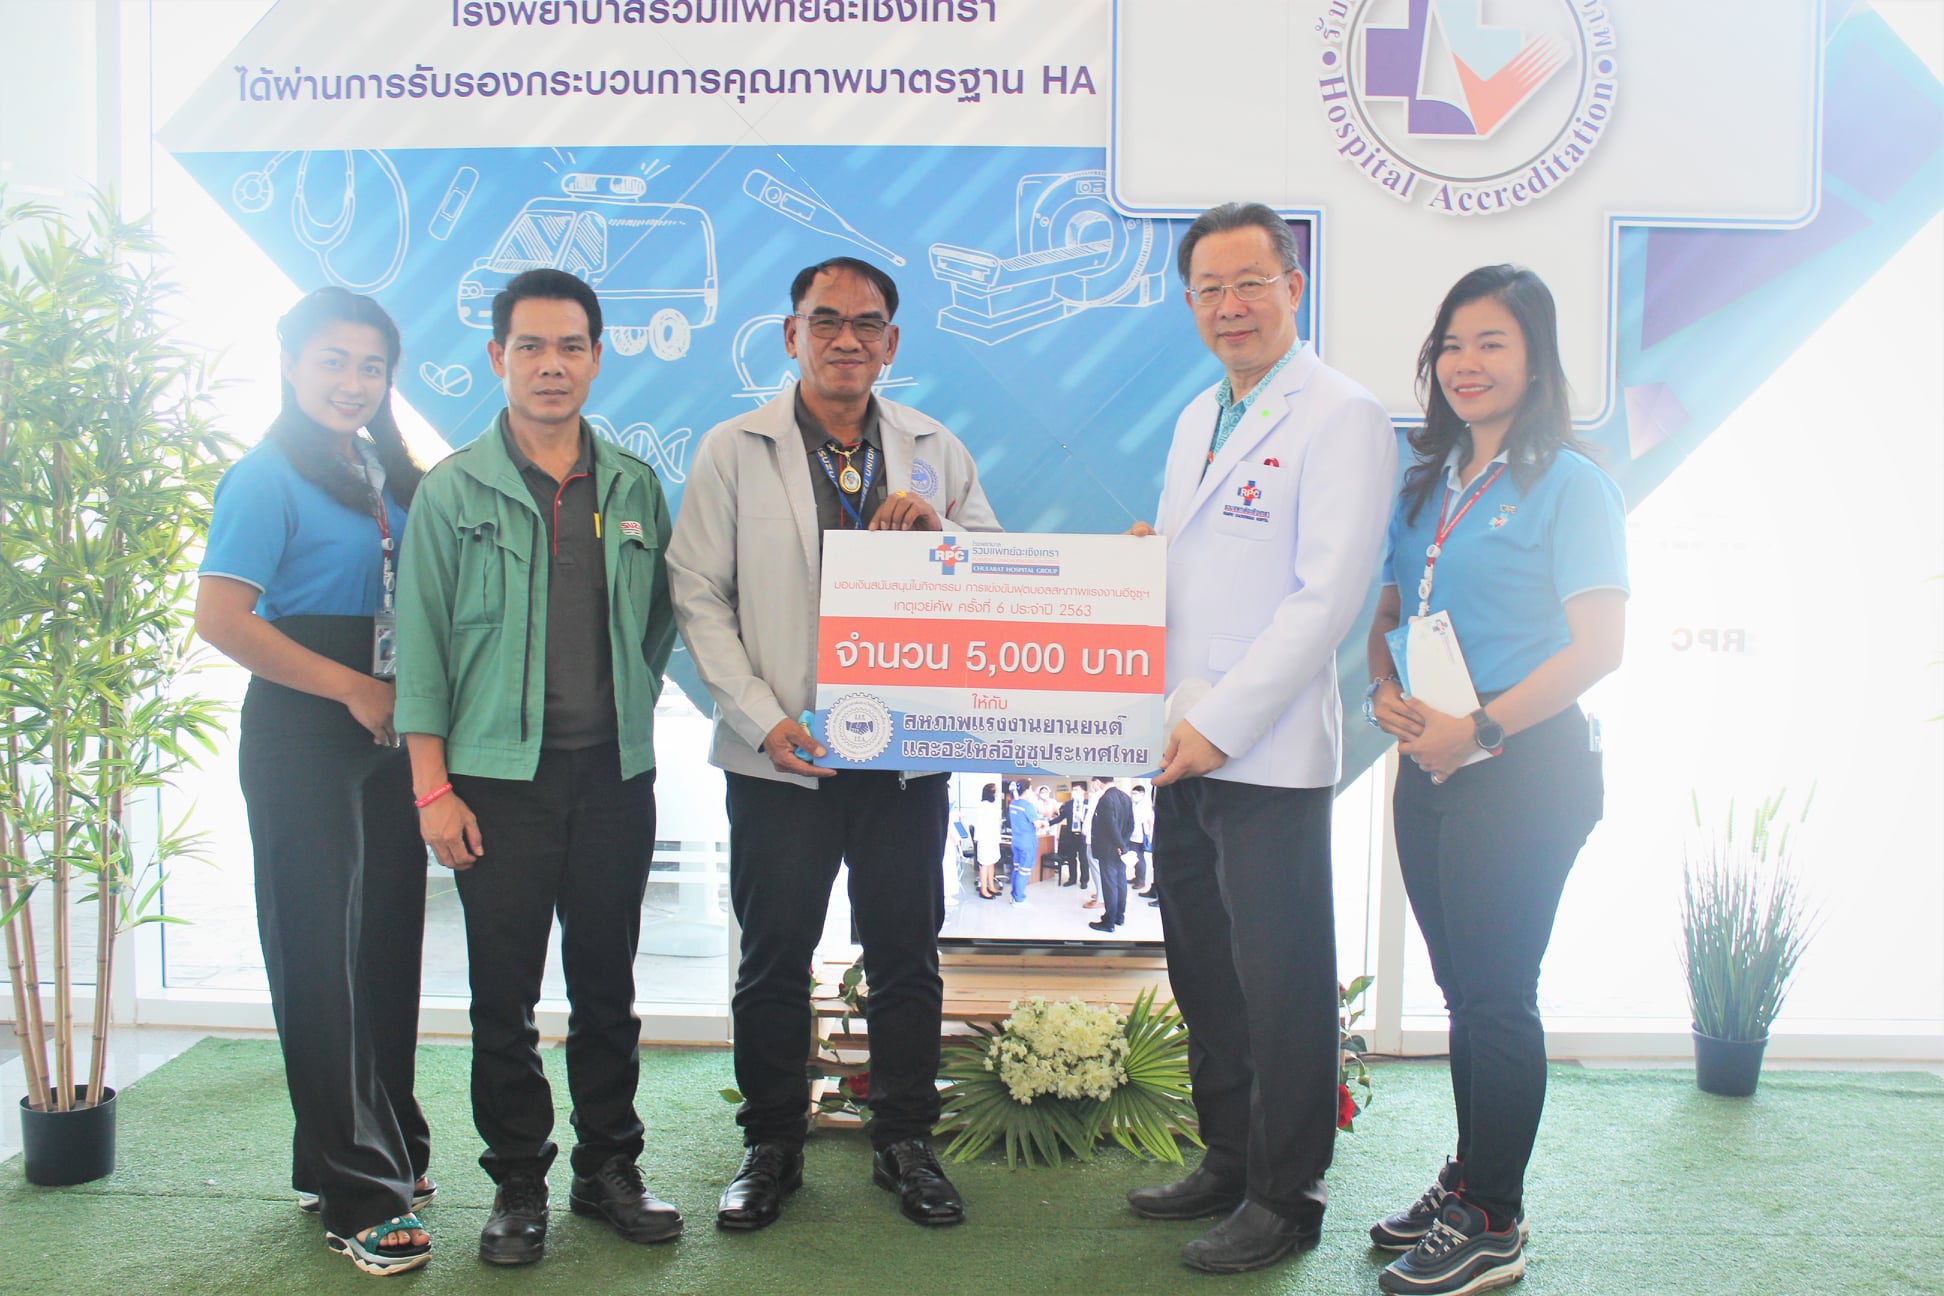 เมื่อวันที่ 13 พฤศจิกายน 2563 ทางโรงพยาบาลรวมแพทย์ฉะเชิงเทราได้ร่วมสนับสนุนงบประมาณ จำนวนเงิน 5,000 บาท ให้กับสหภาพแรงงานยานยนต์และอะไหล่อีซูซุประเทศไทย - ข่าวสารและกิจกรรม - โรงพยาบาลรวมแพทย์ฉะเชิงเทรา